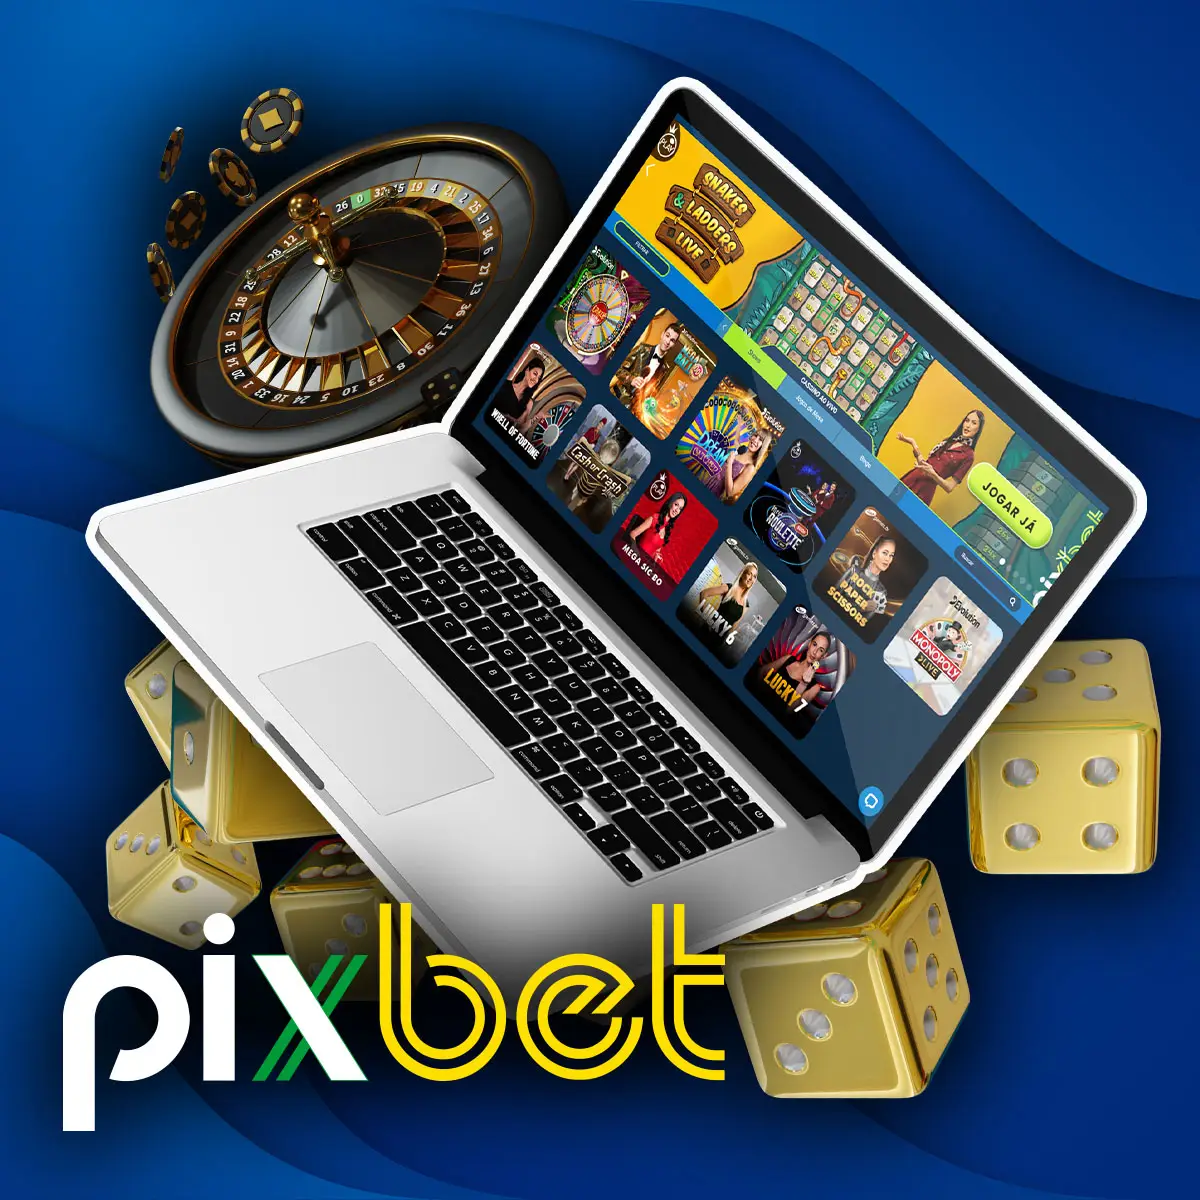 Jogos de TV de apostas esportivas da casa de apostas Pixbet no mercado brasileiro